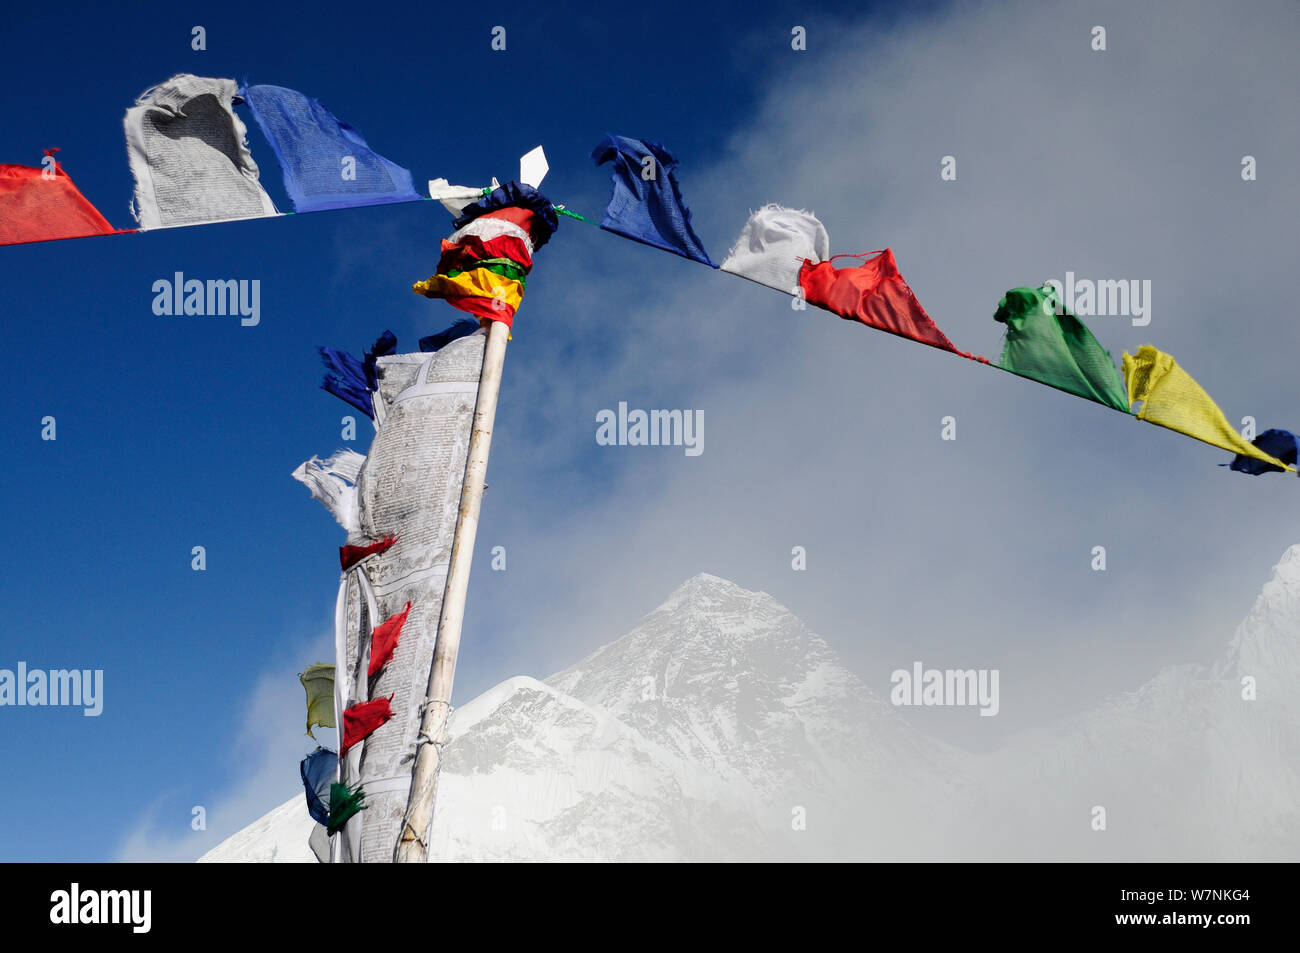 La preghiera buddista bandiere nella parte anteriore del monte Everest è avvolta nella nebbia, dal Kala Pattar (5545 m). Parco Nazionale di Sagarmatha (Patrimonio Mondiale UNESCO). Khumbu / Regione Everest, Nepal, Himalaya, ottobre 2011. Foto Stock